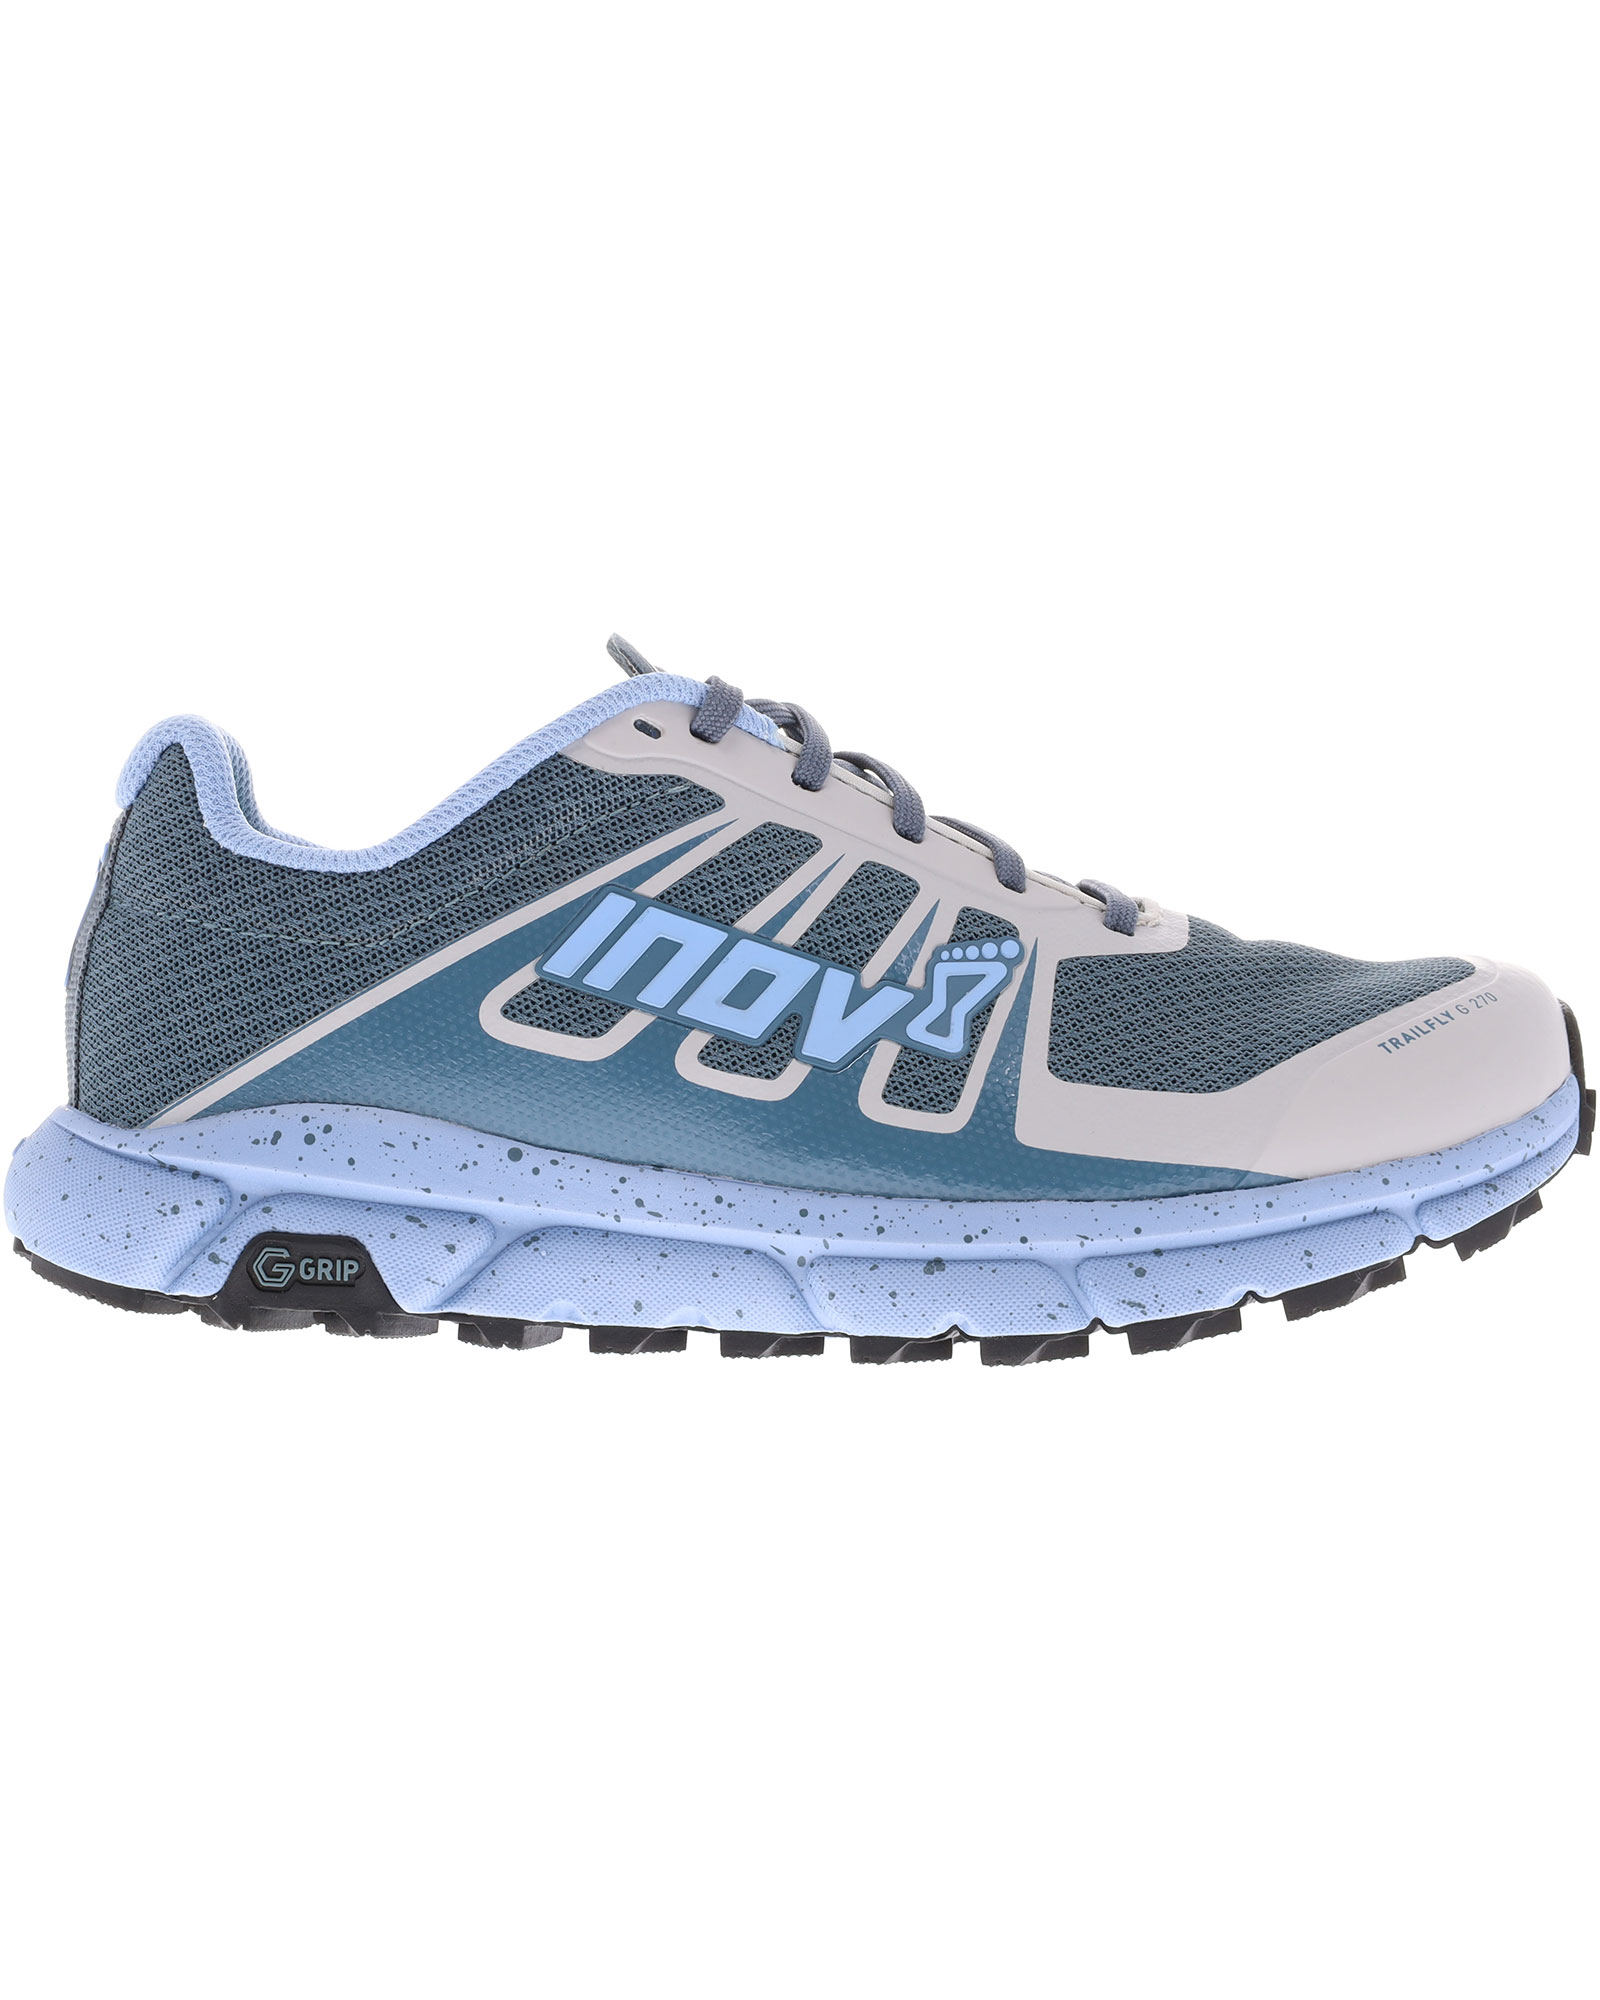 Inov 8 TrailFly G 270 V2 Women’s Trail Shoes - Blue/Grey UK 5.5